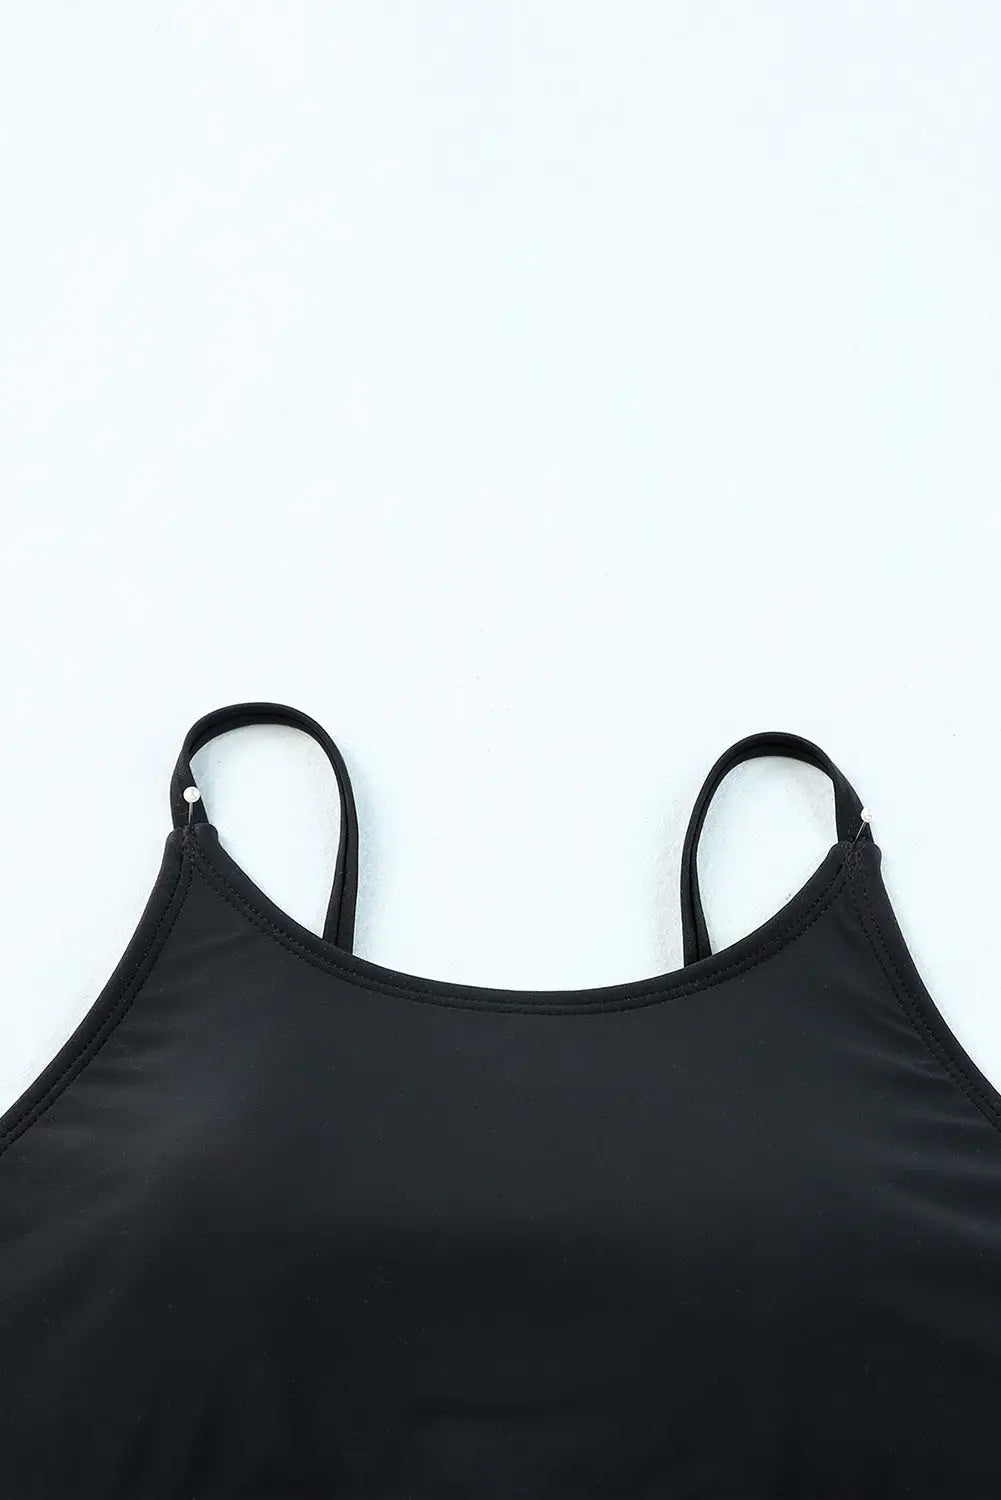 Black rose leopard mesh trim 2pcs bikini swimsuit - bikinis